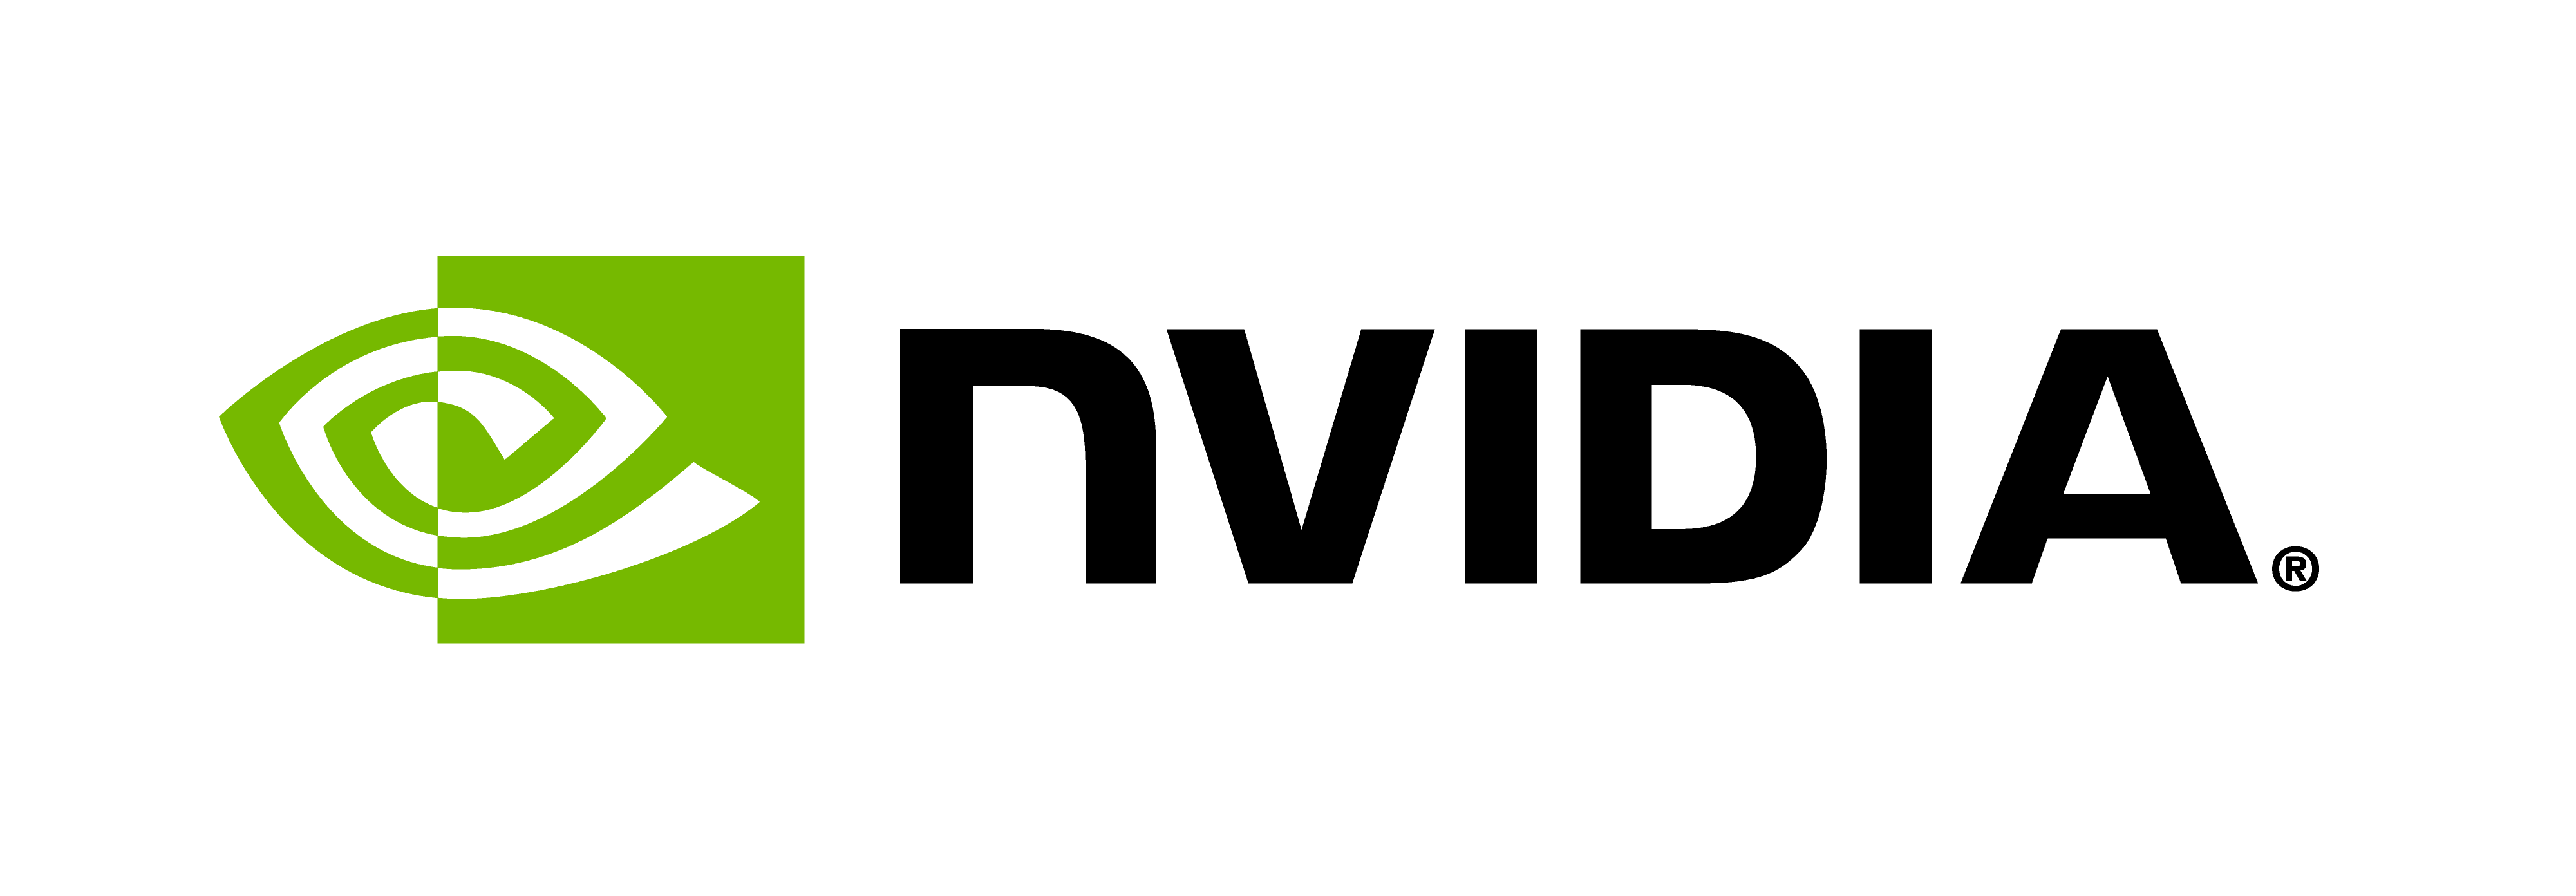 NVIDIA company logo